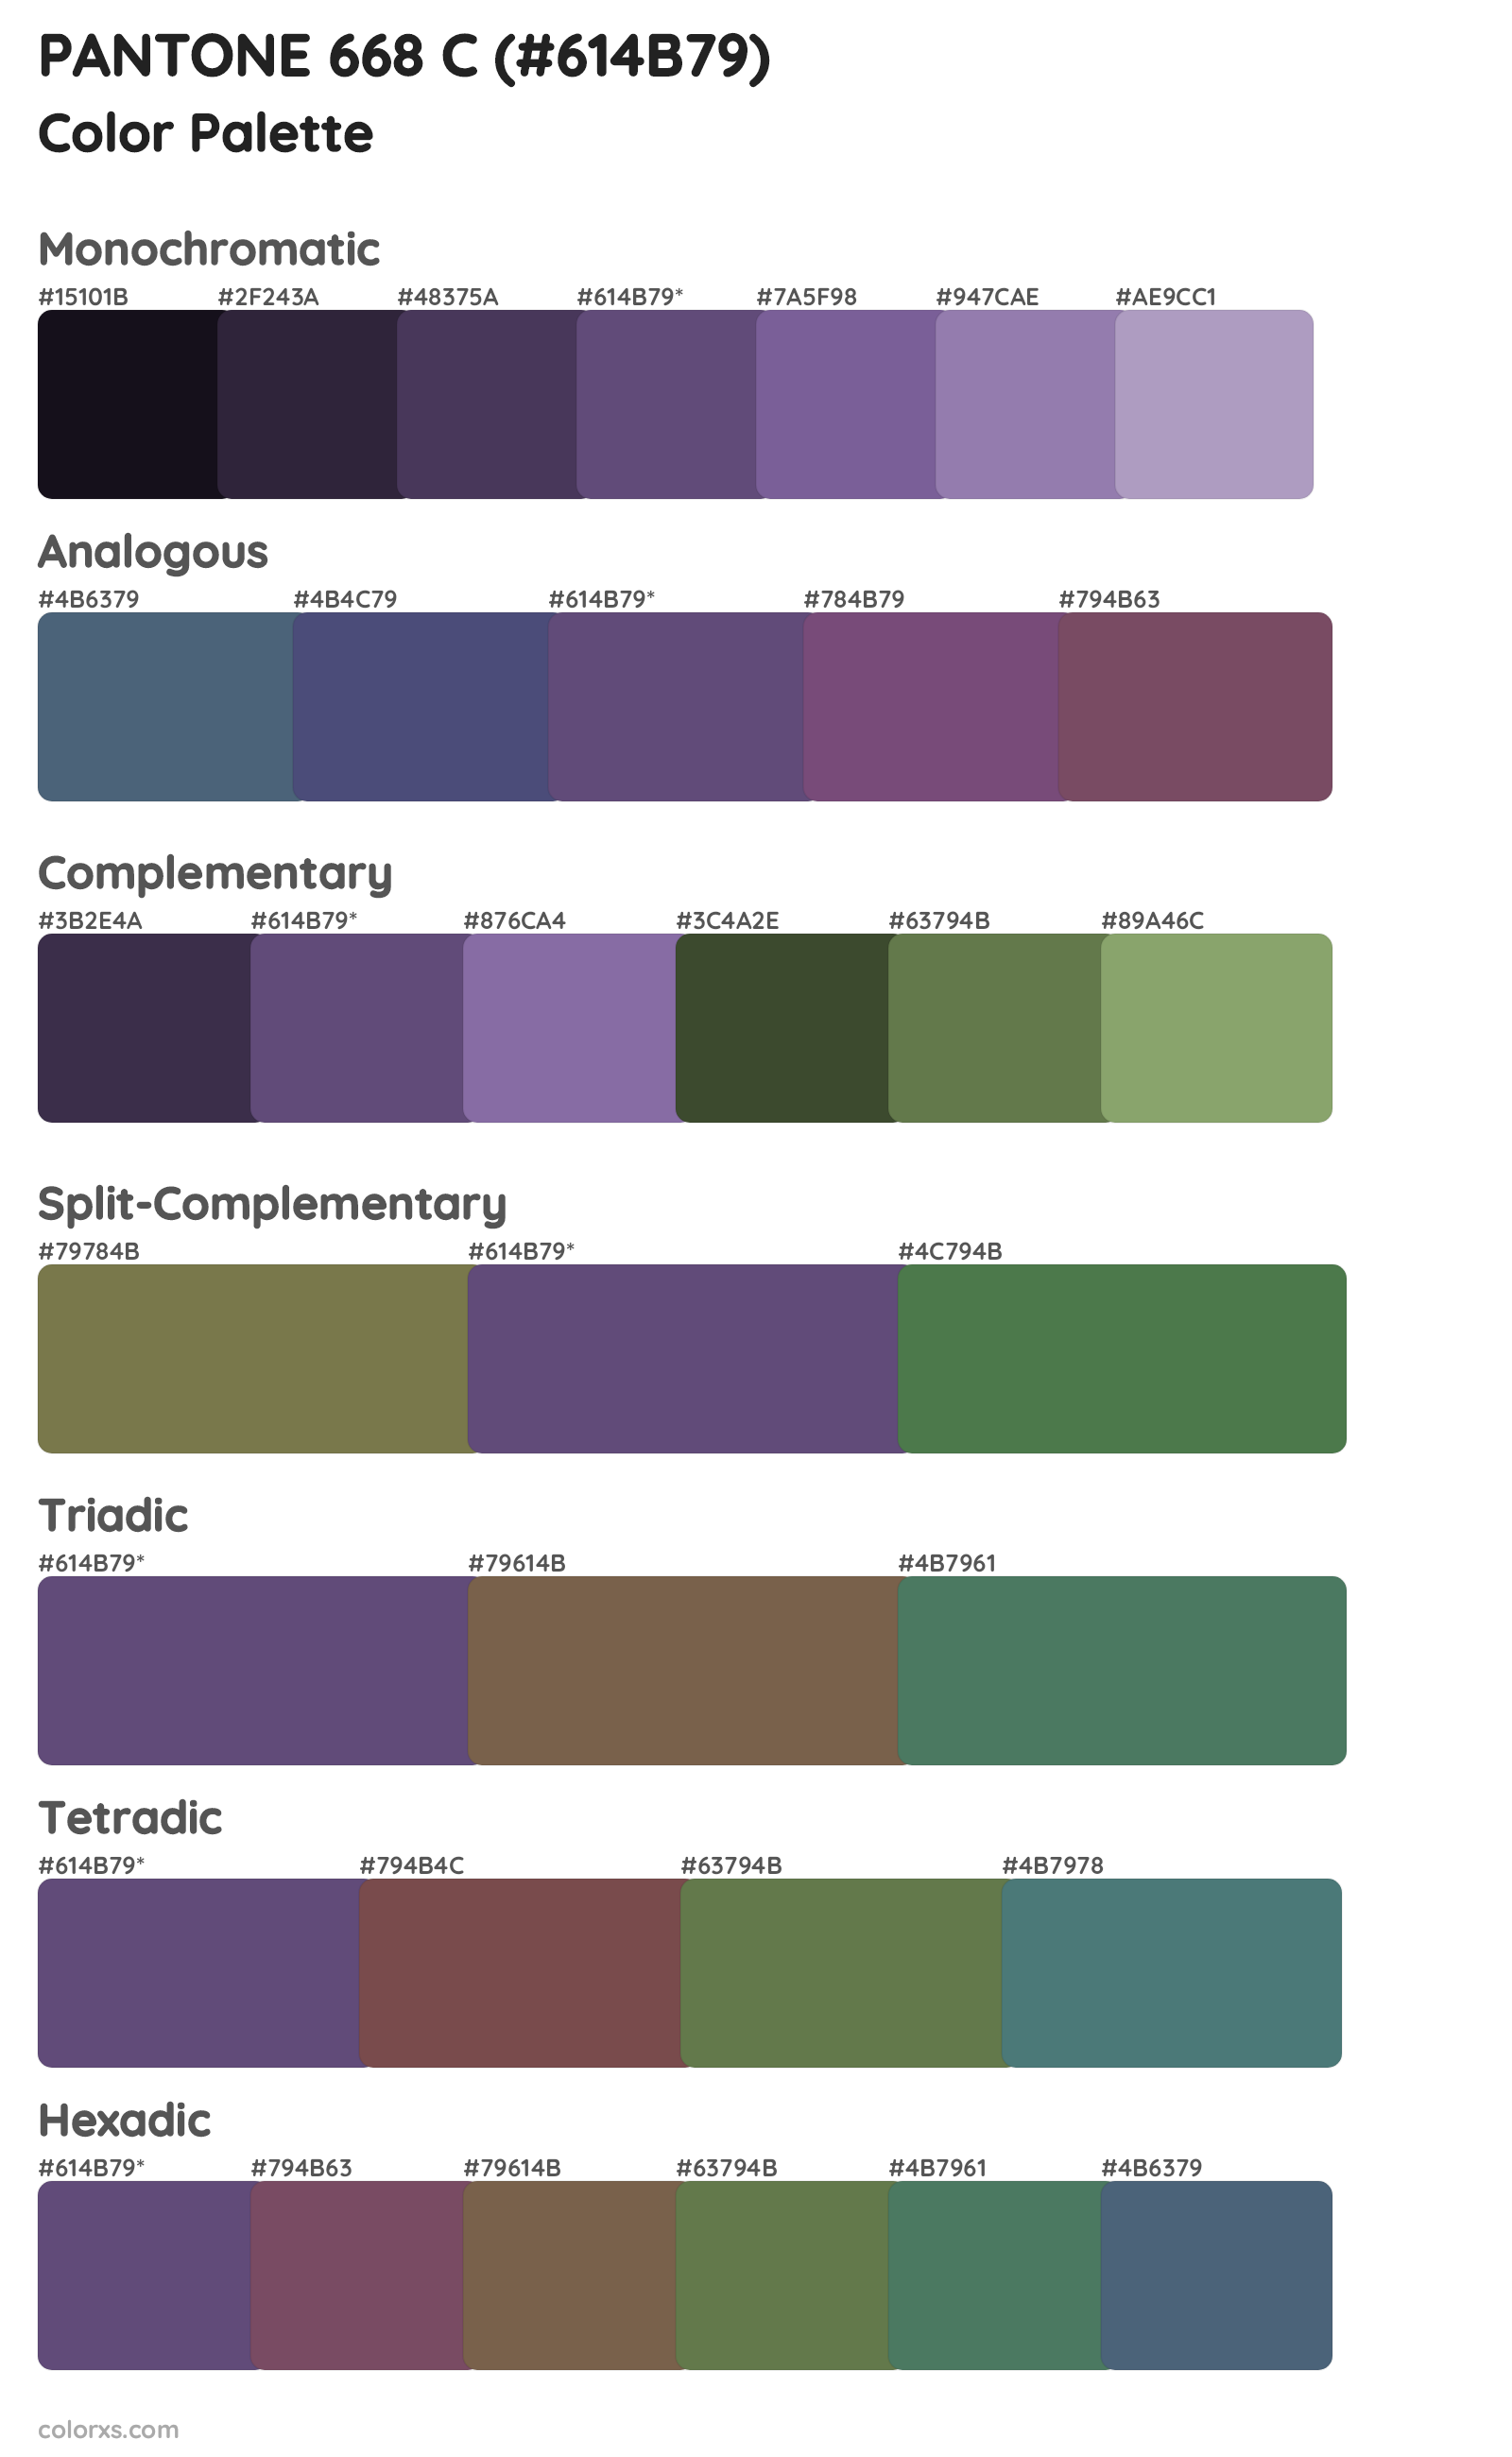 PANTONE 668 C Color Scheme Palettes